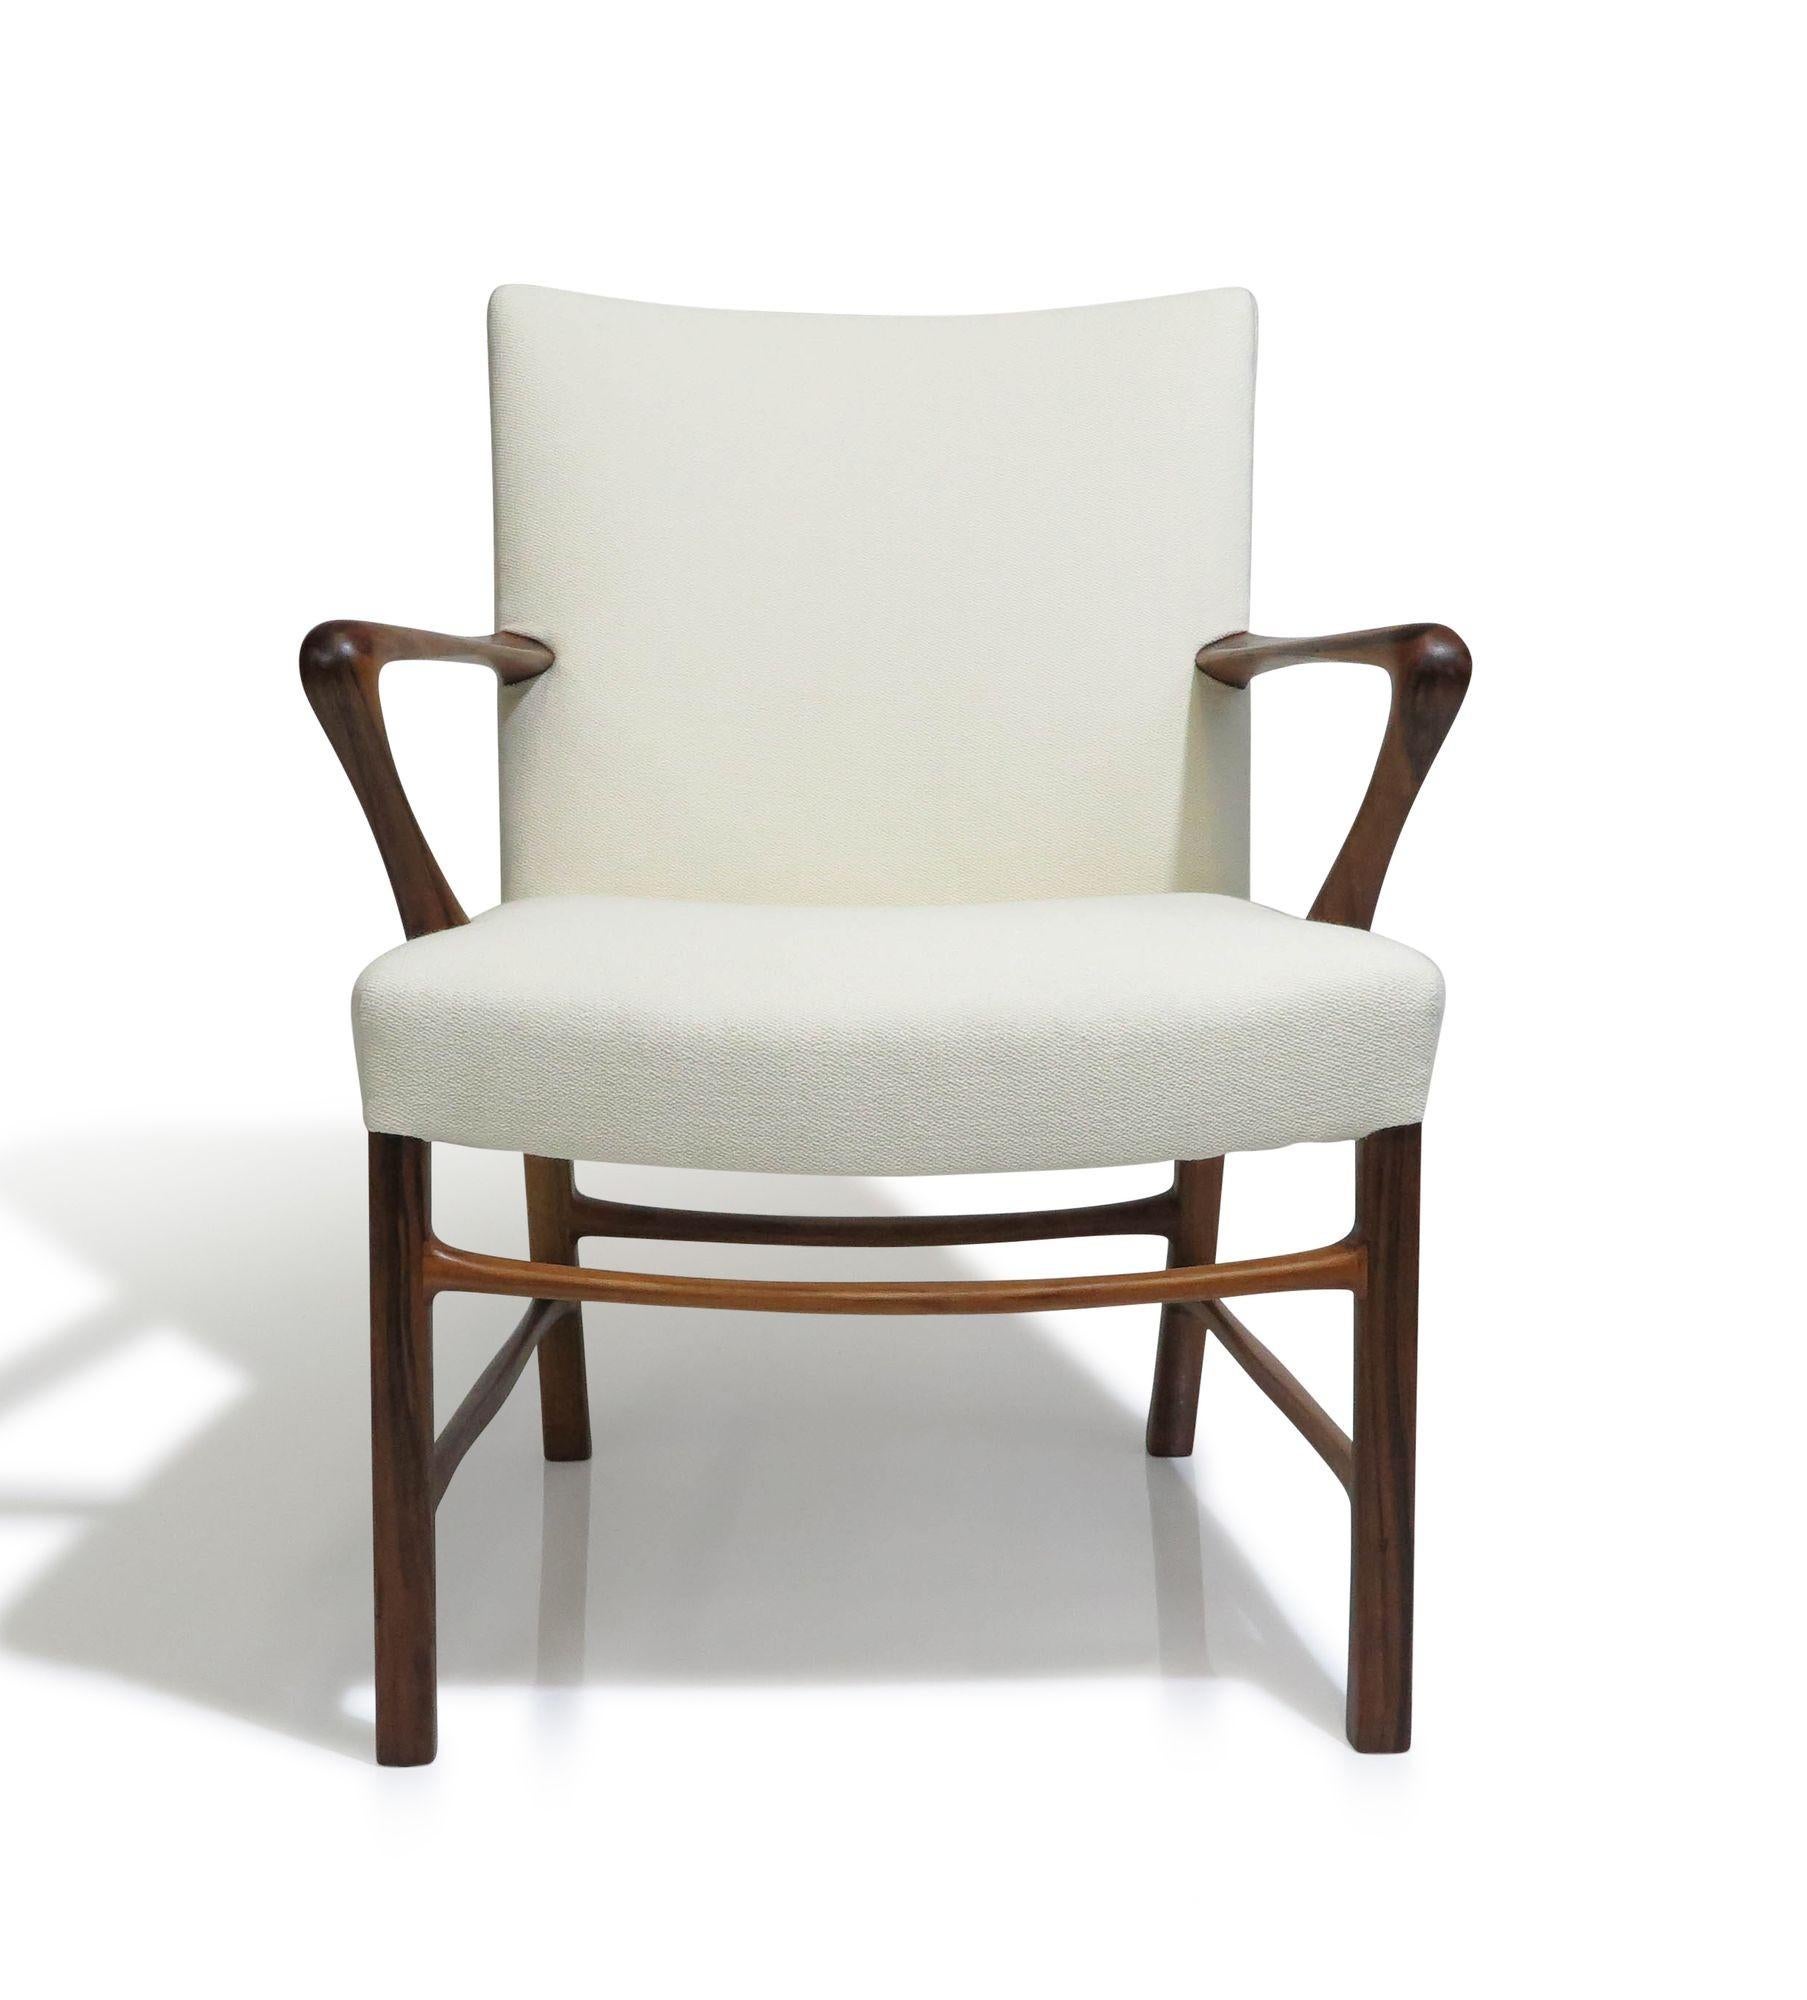 Fein gearbeiteter Sessel aus Palisanderholz, Entwurf des dänischen Architekten der Moderne Palle Suenson für Jacob Kjaer, um 1940, Dänemark. Der Stuhl zeichnet sich durch elegant geschwungene Armlehnen und Kreuzstreben aus Palisanderholz aus. Es